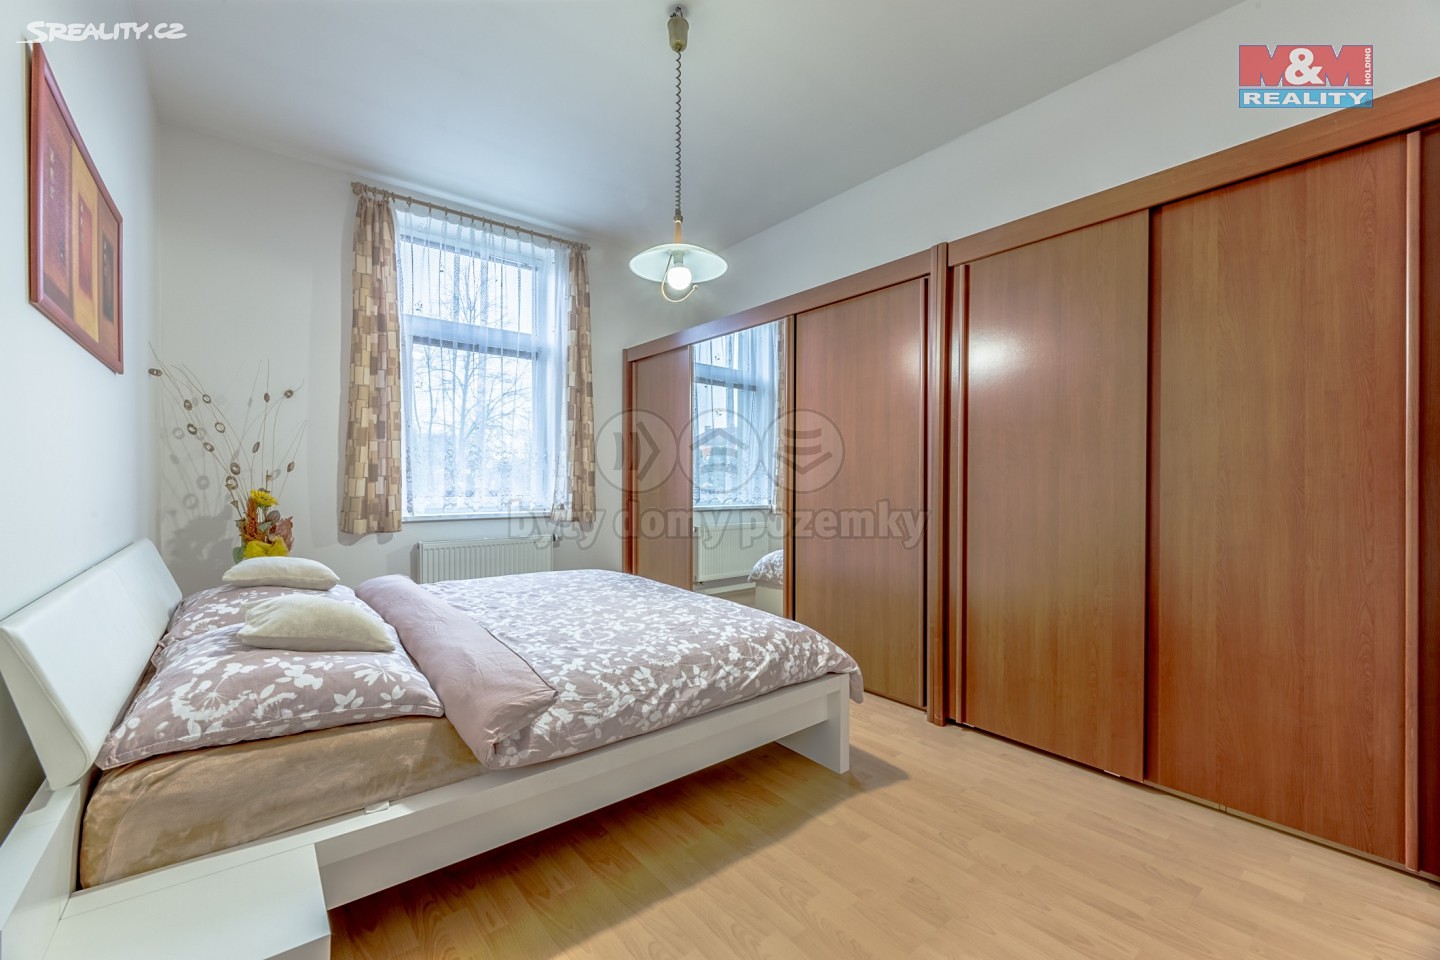 Prodej bytu 4+kk 95 m², Mírová, Milovice